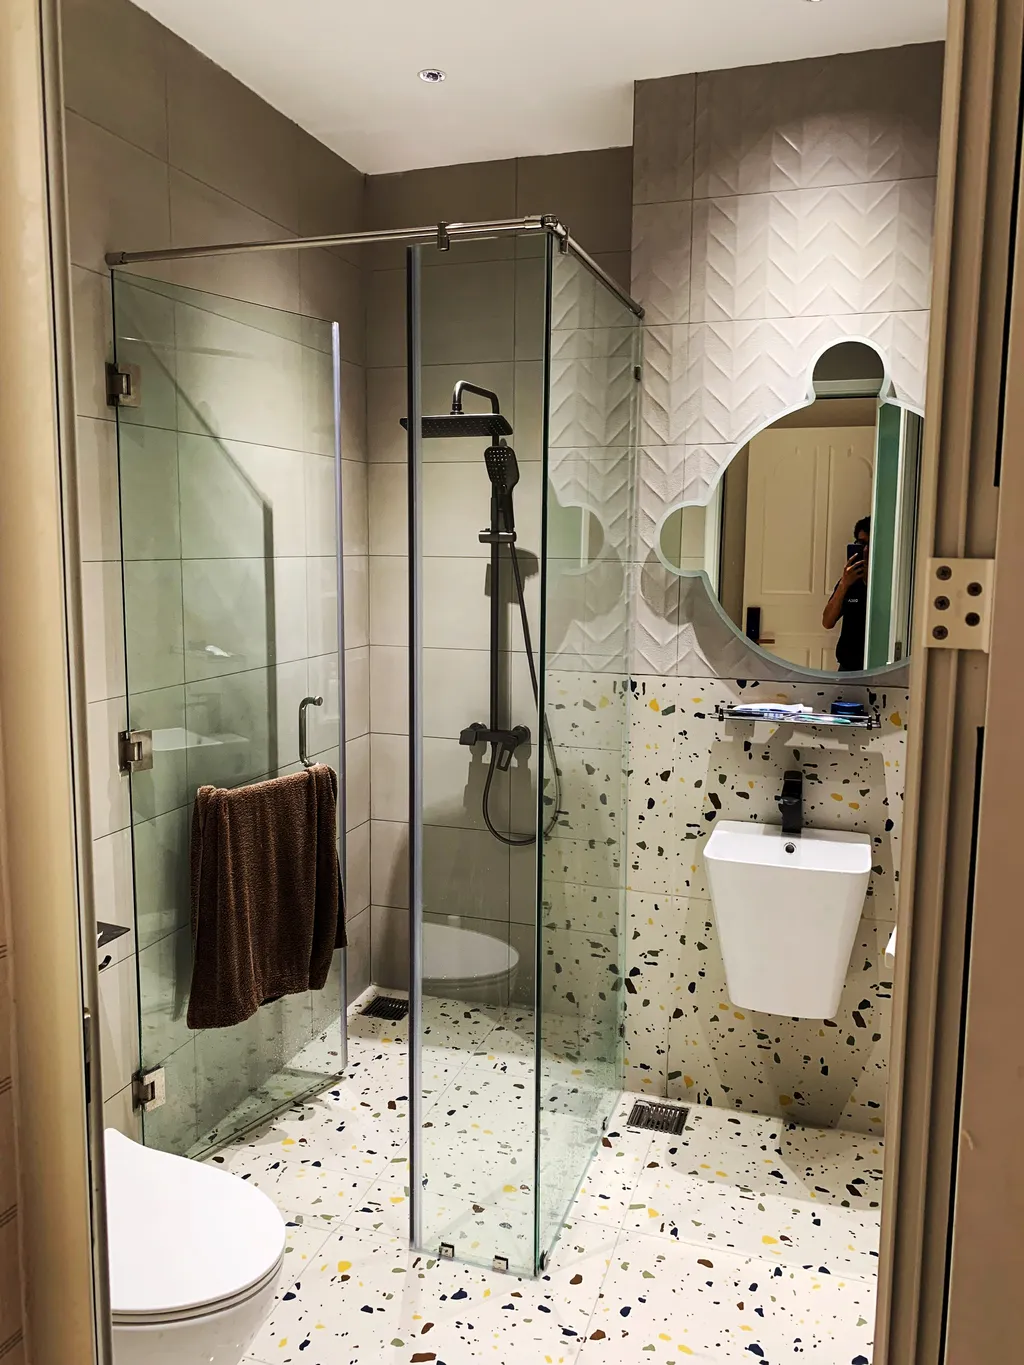 Hoàn thiện nội thất phòng tắm, nhà vệ sinh Biệt thự Bình Chánh mang phong cách Modern hiện đại